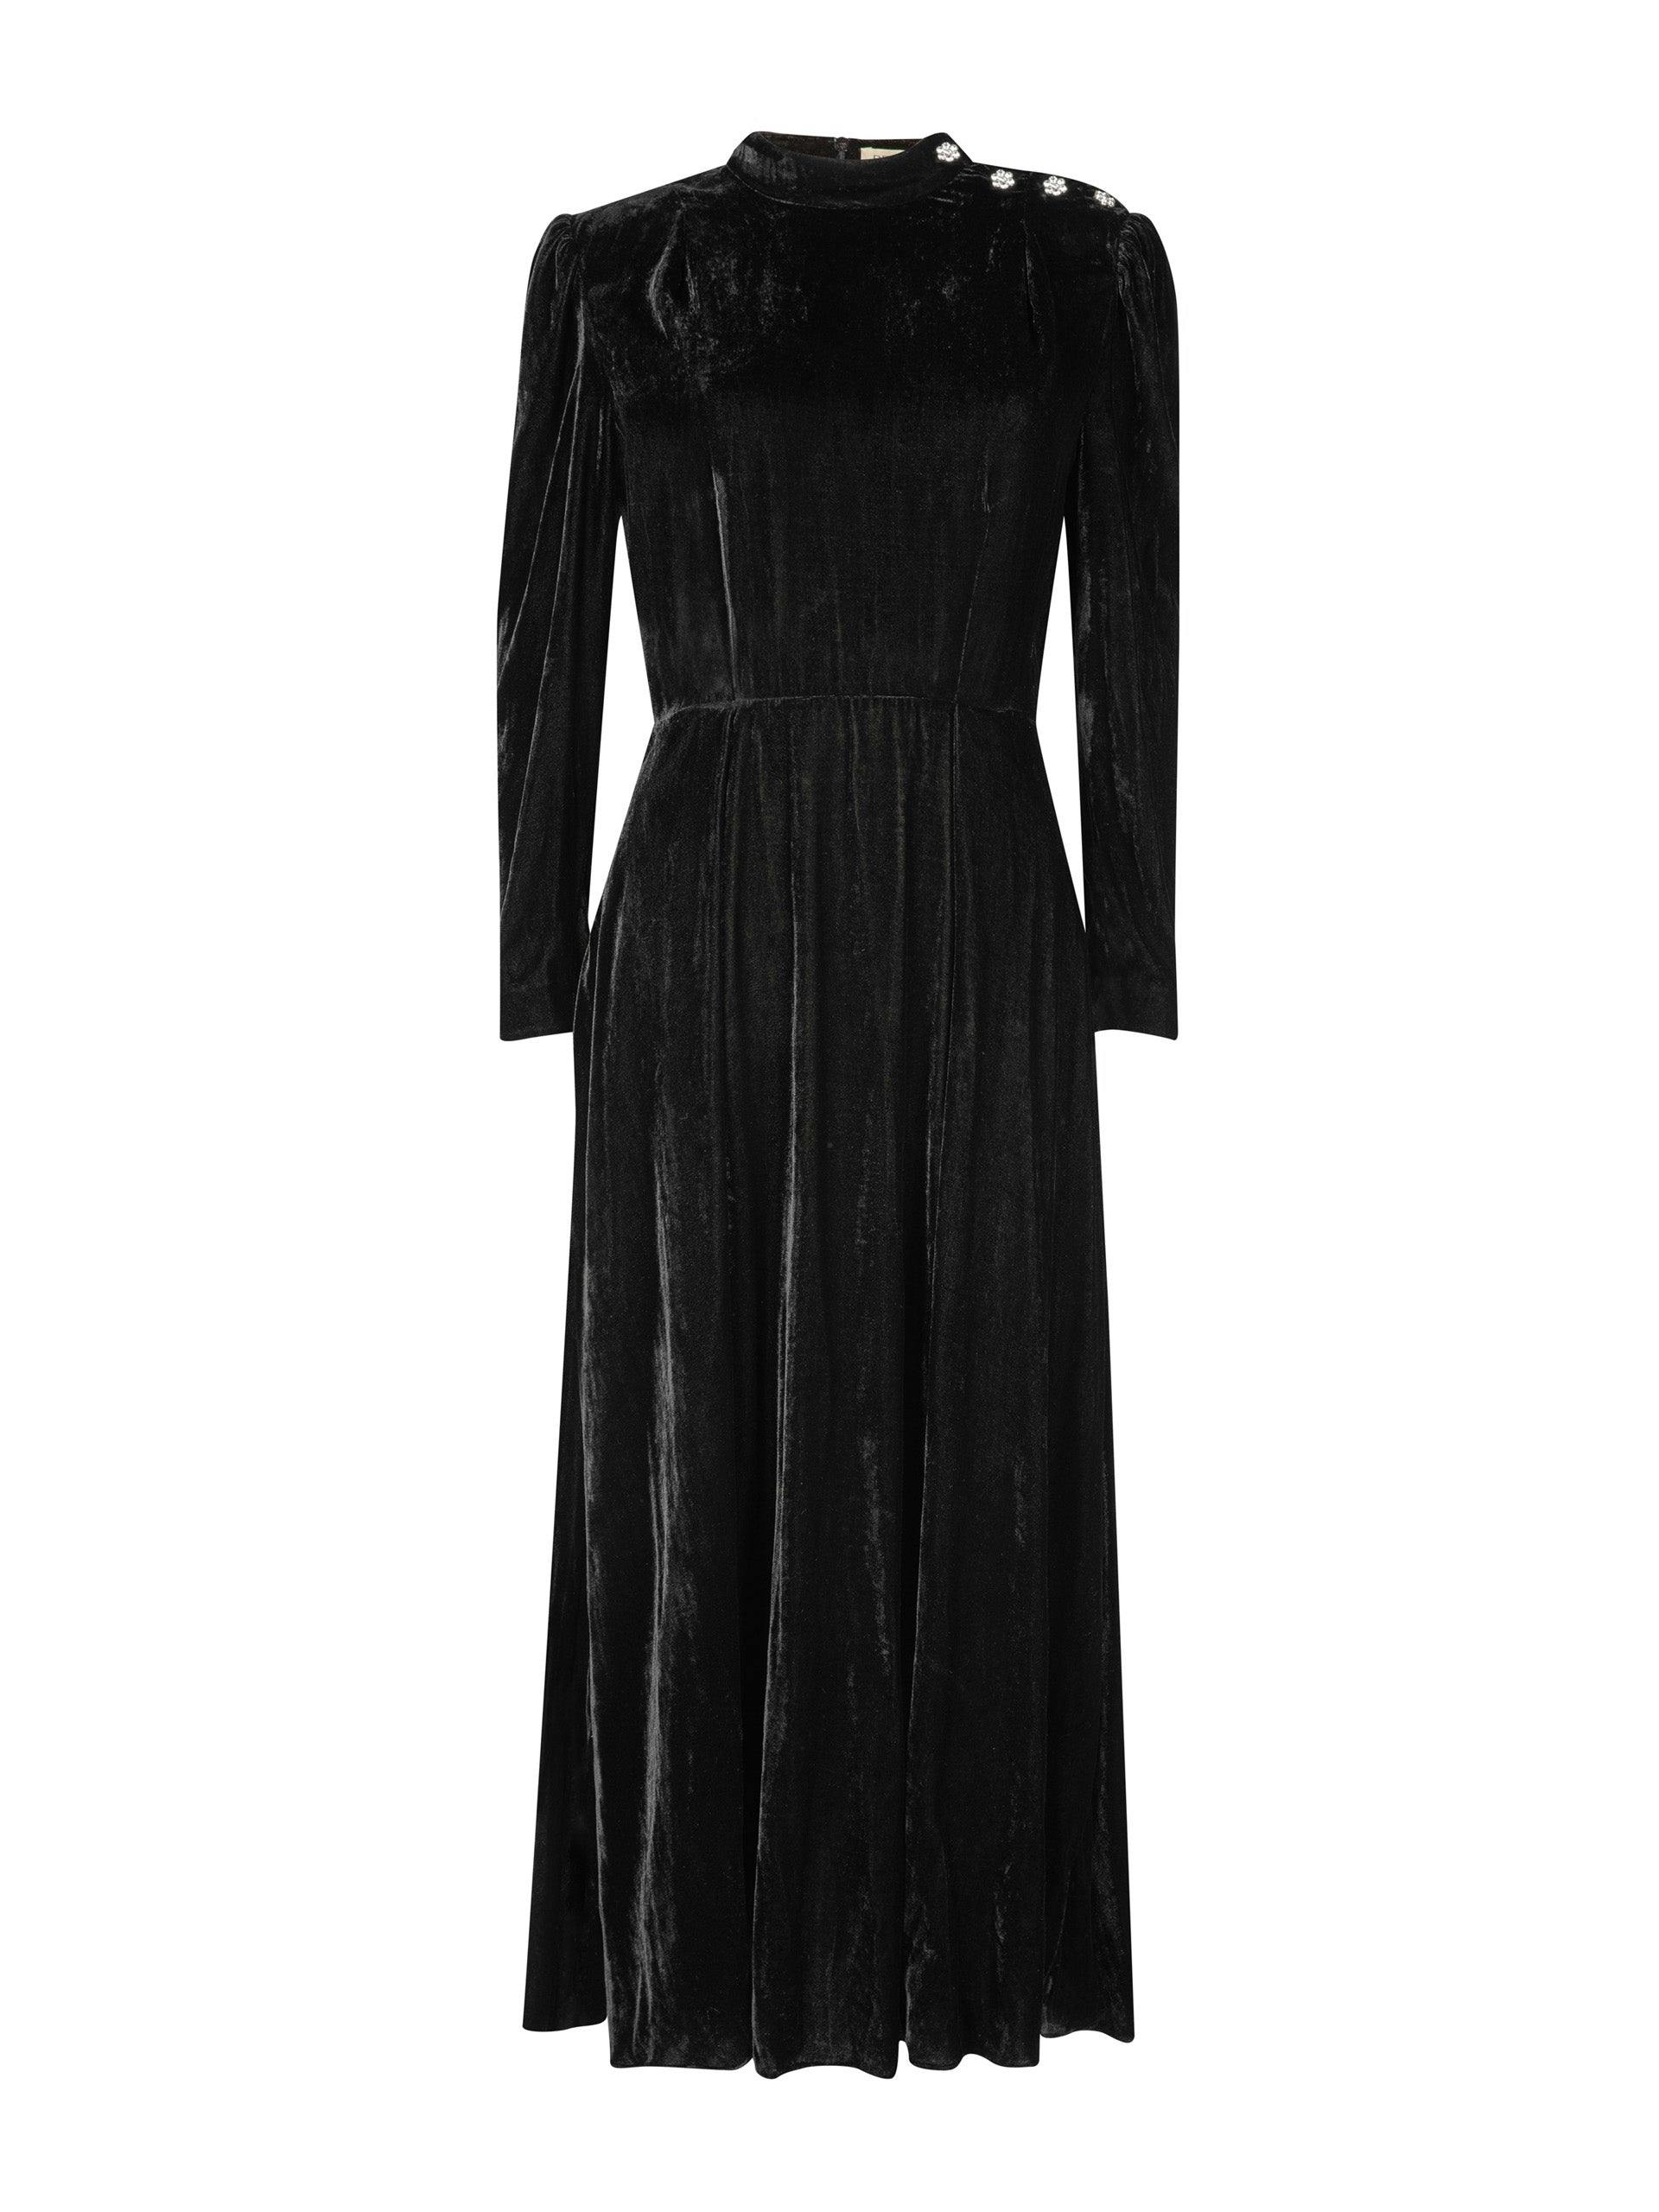 Sonia black velvet dress